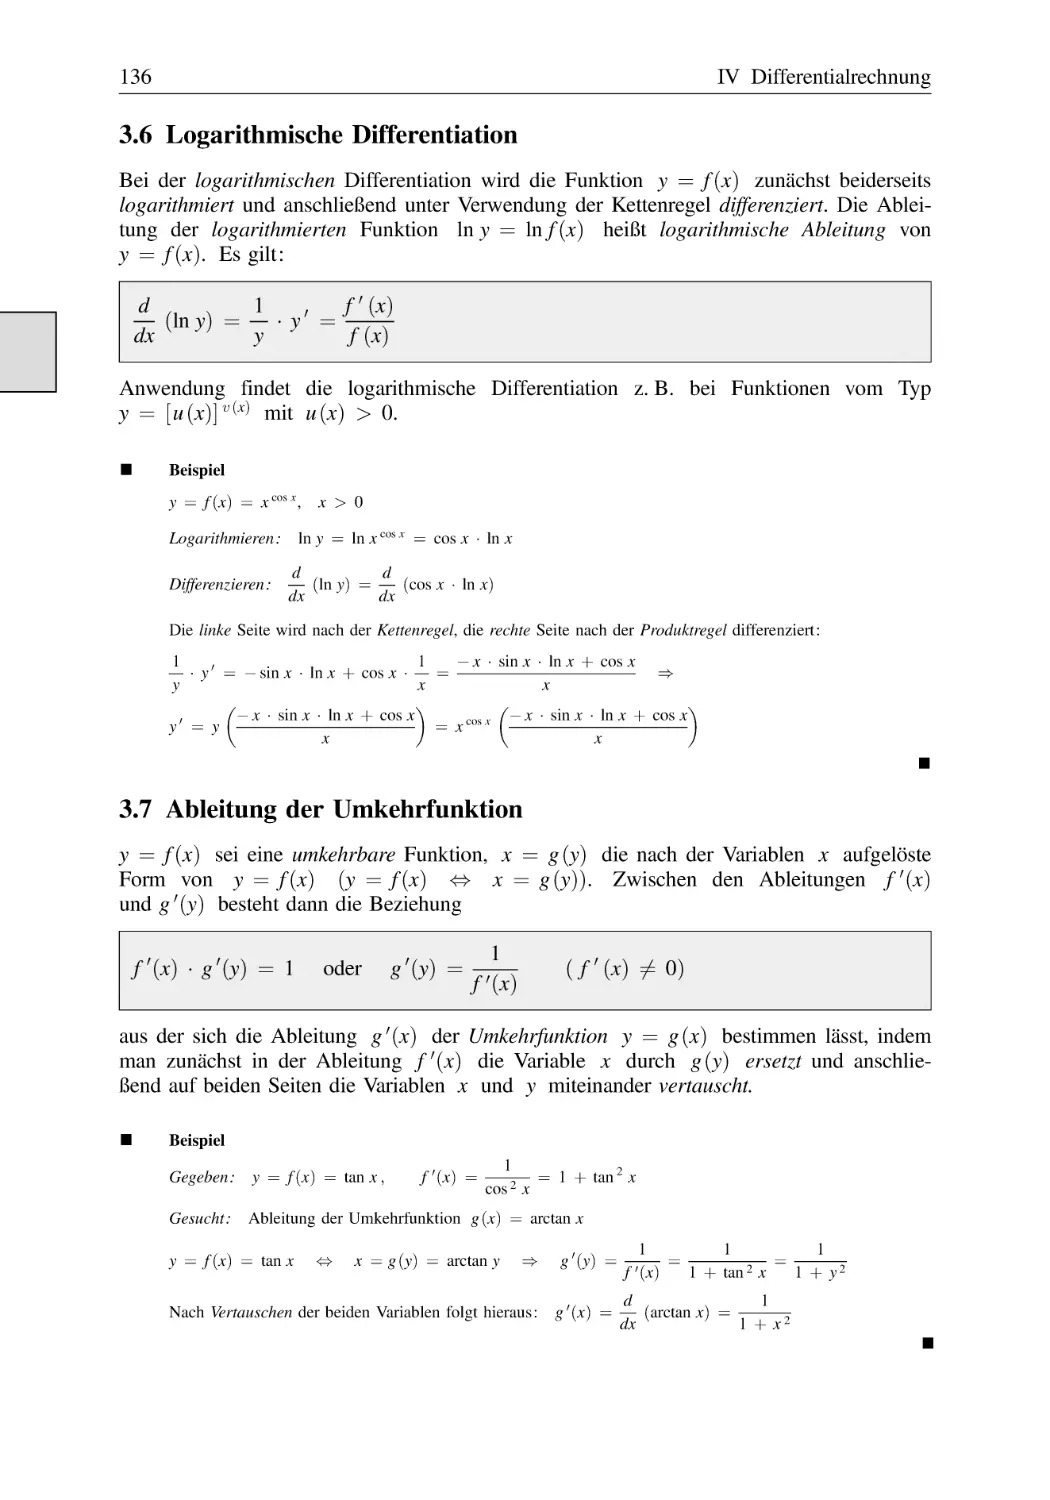 3.6 Logarithmische Differentiation
3.7 Ableitung der Umkehrfunktion